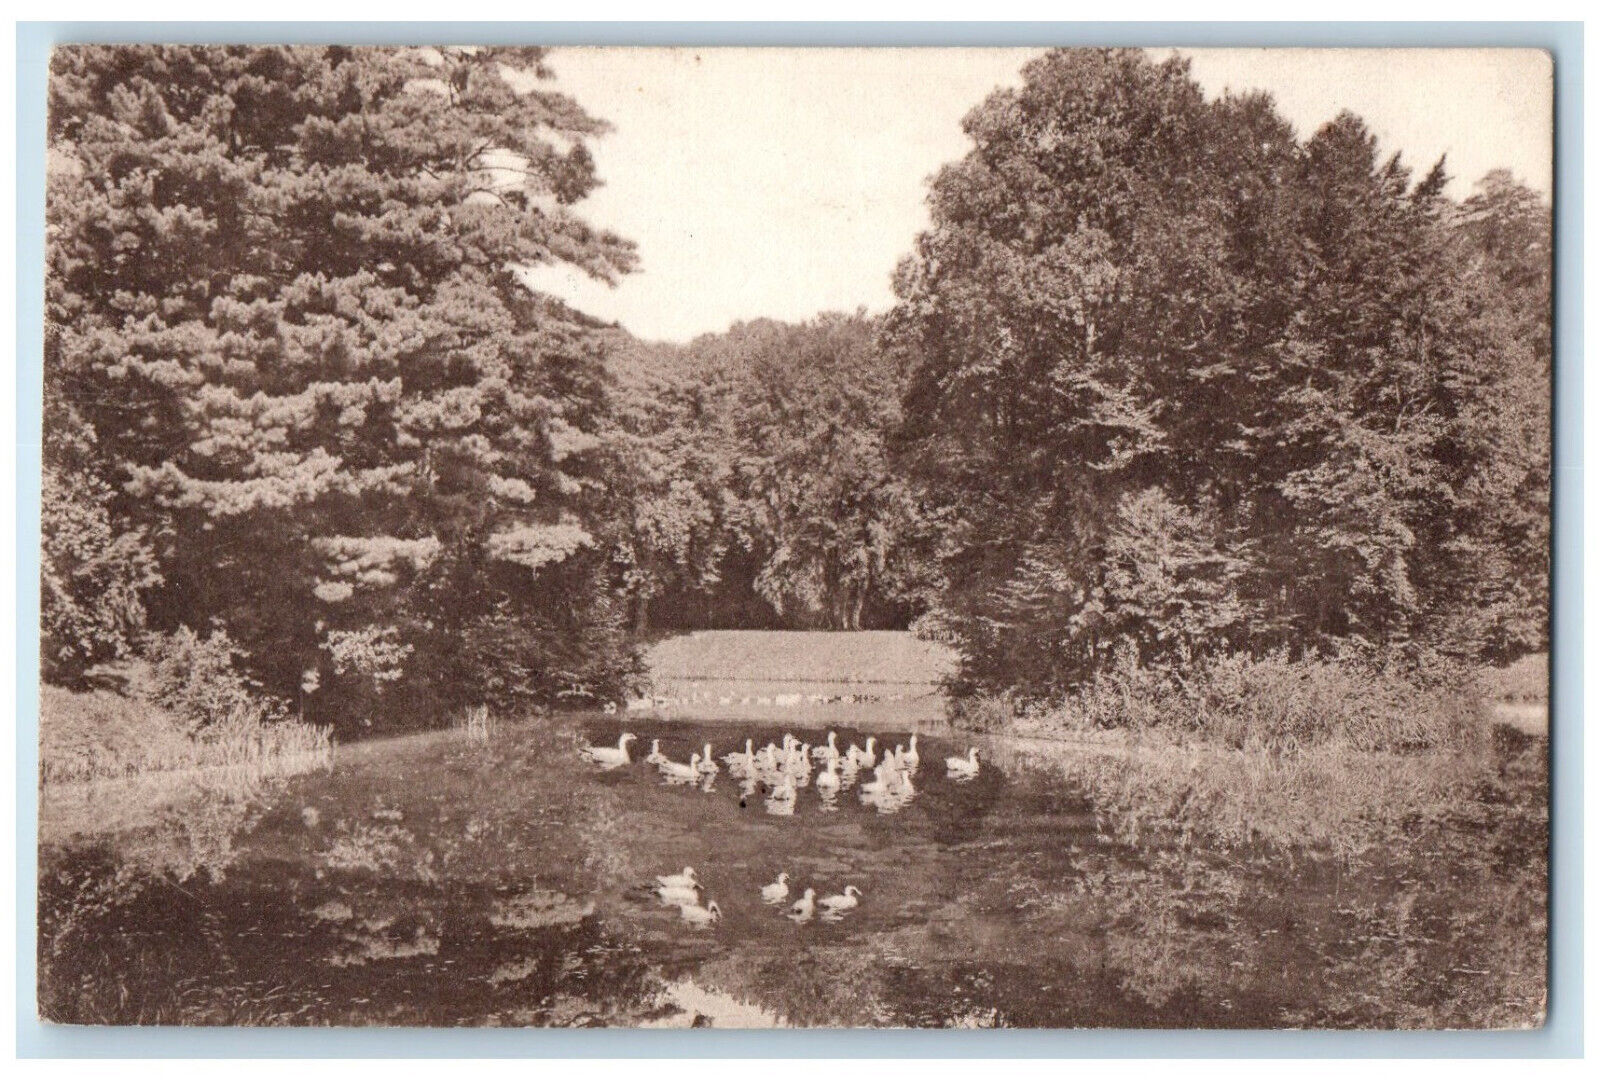 Körmend Vas Hungary Postcard Scene of Ducks Walking on the Road 1923 Posted